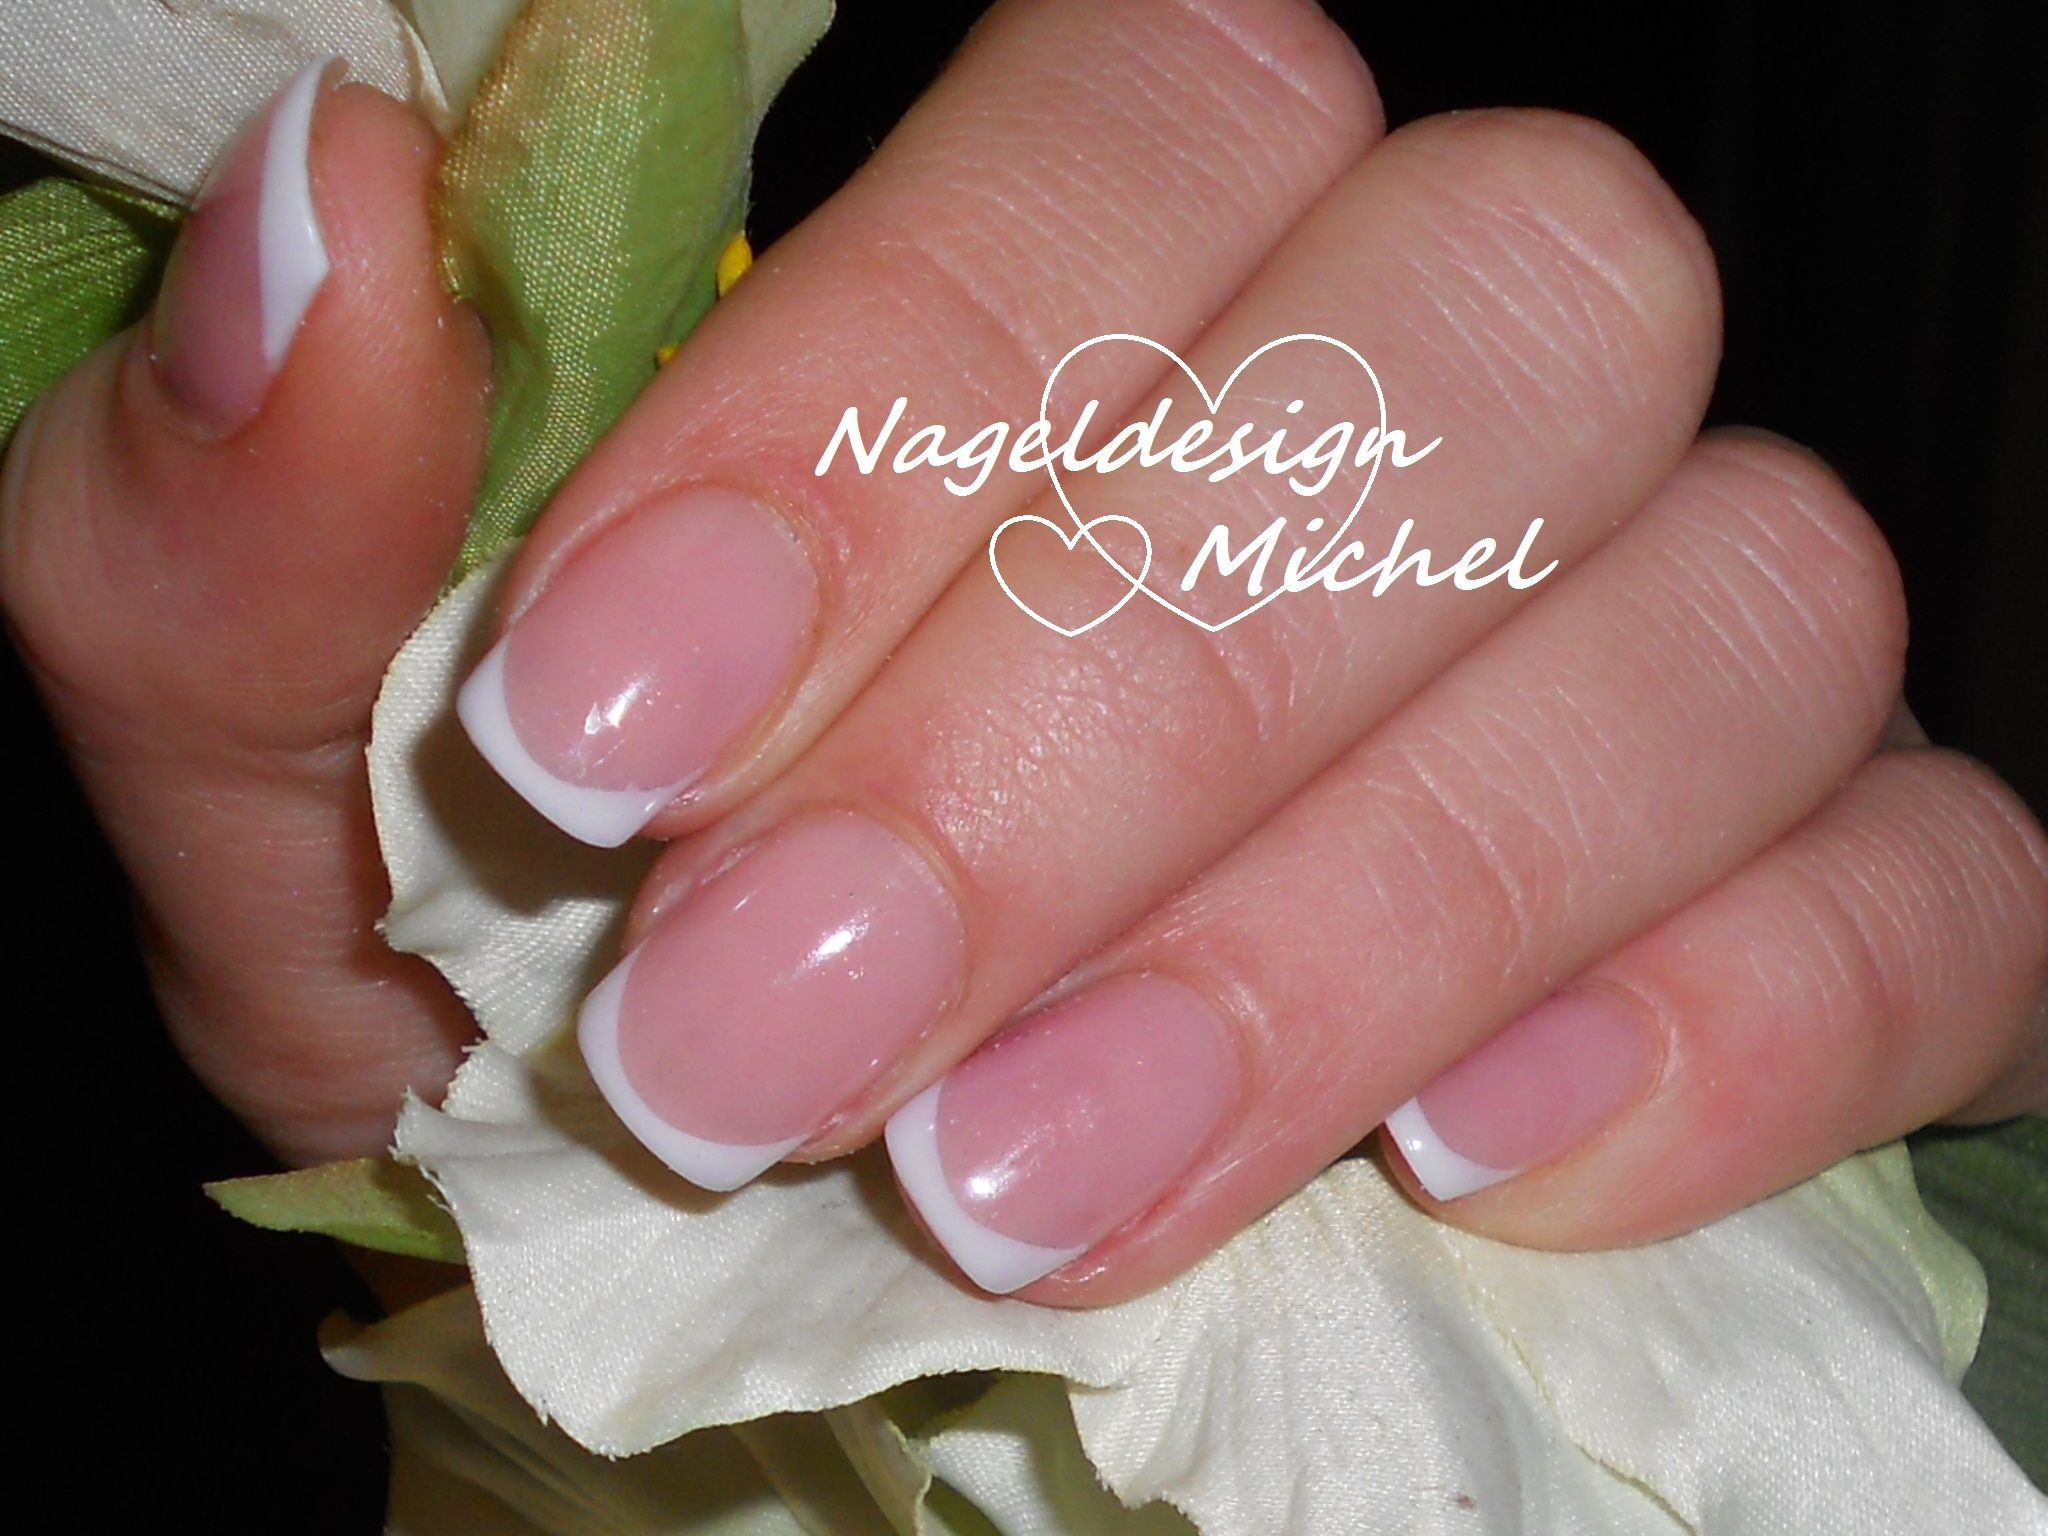 Nageldesign Mainz
 French Nails in Mainz von Ihrem Nagelstudio Naildesign Michel